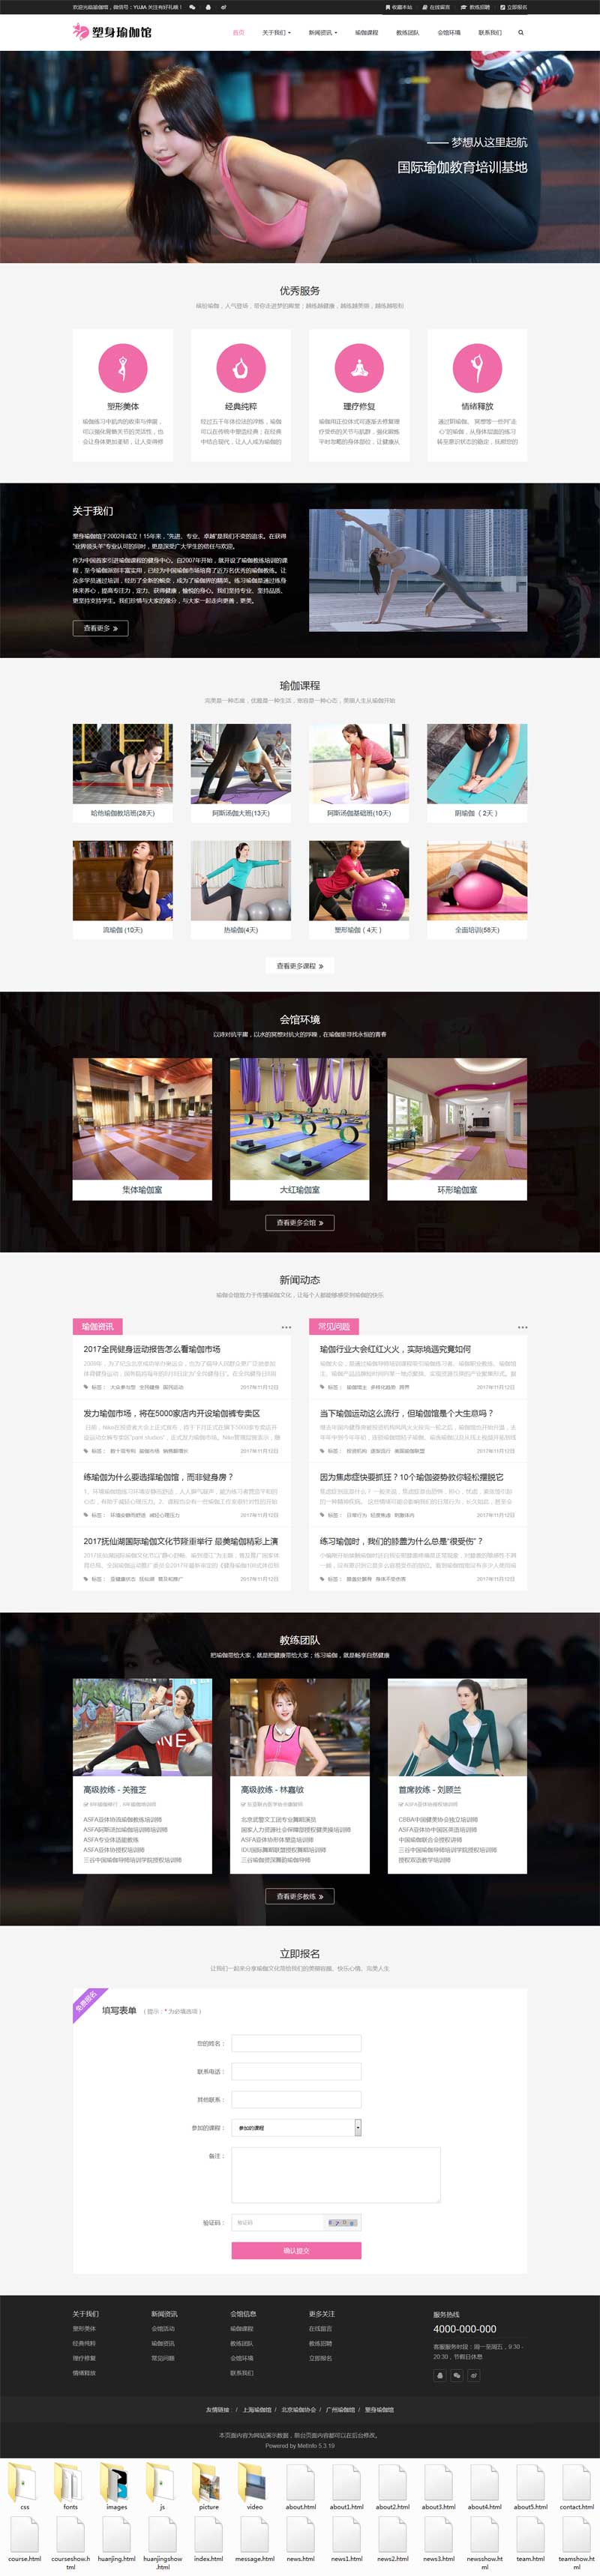 粉色的健身房瑜伽馆网站响应式模板